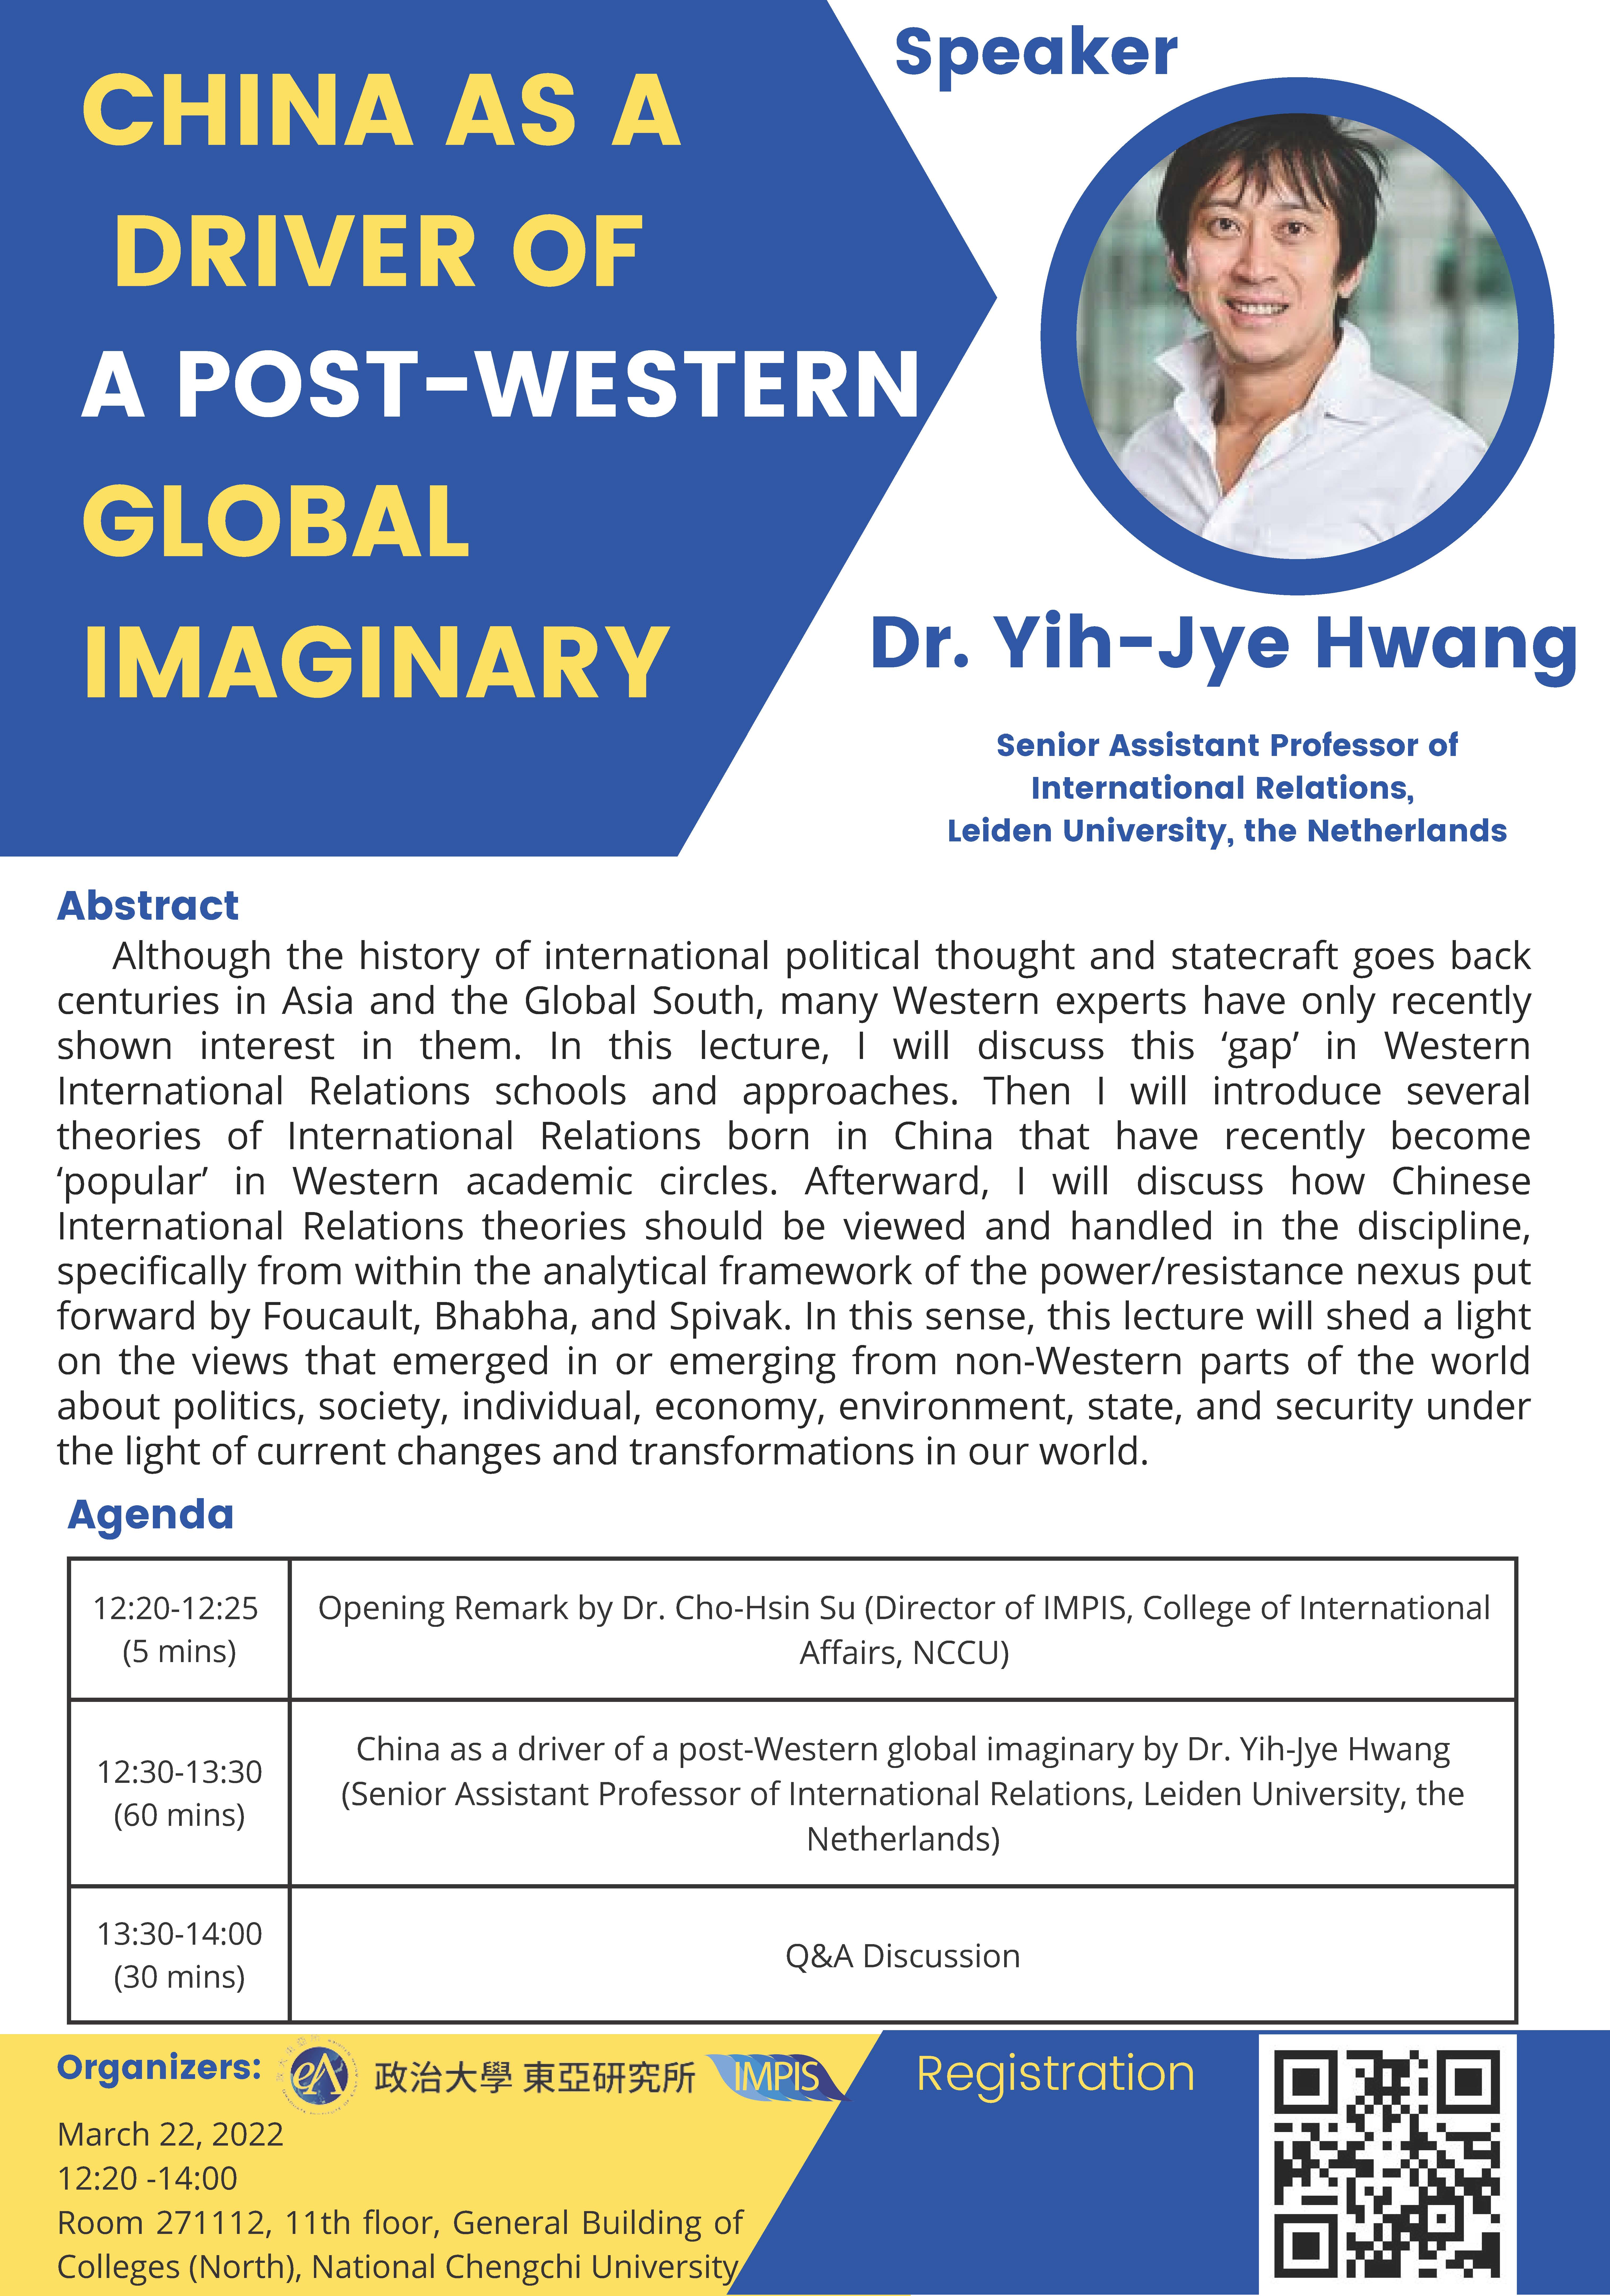 專題演講：Dr. Yih-Jye Hwang—China as a driver of a post-Western global imaginary